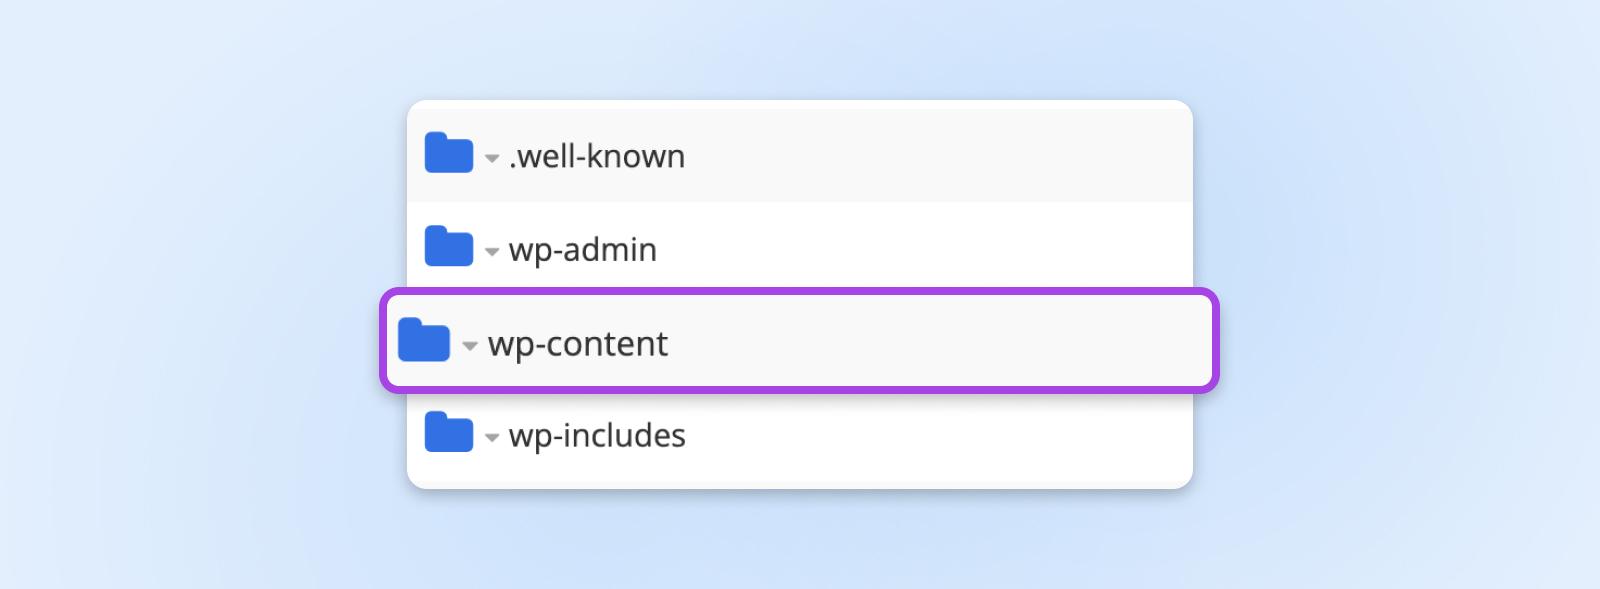 Carpeta wp-content que contiene archivos de WordPress resaltados en azul en la lista del directorio FTP.